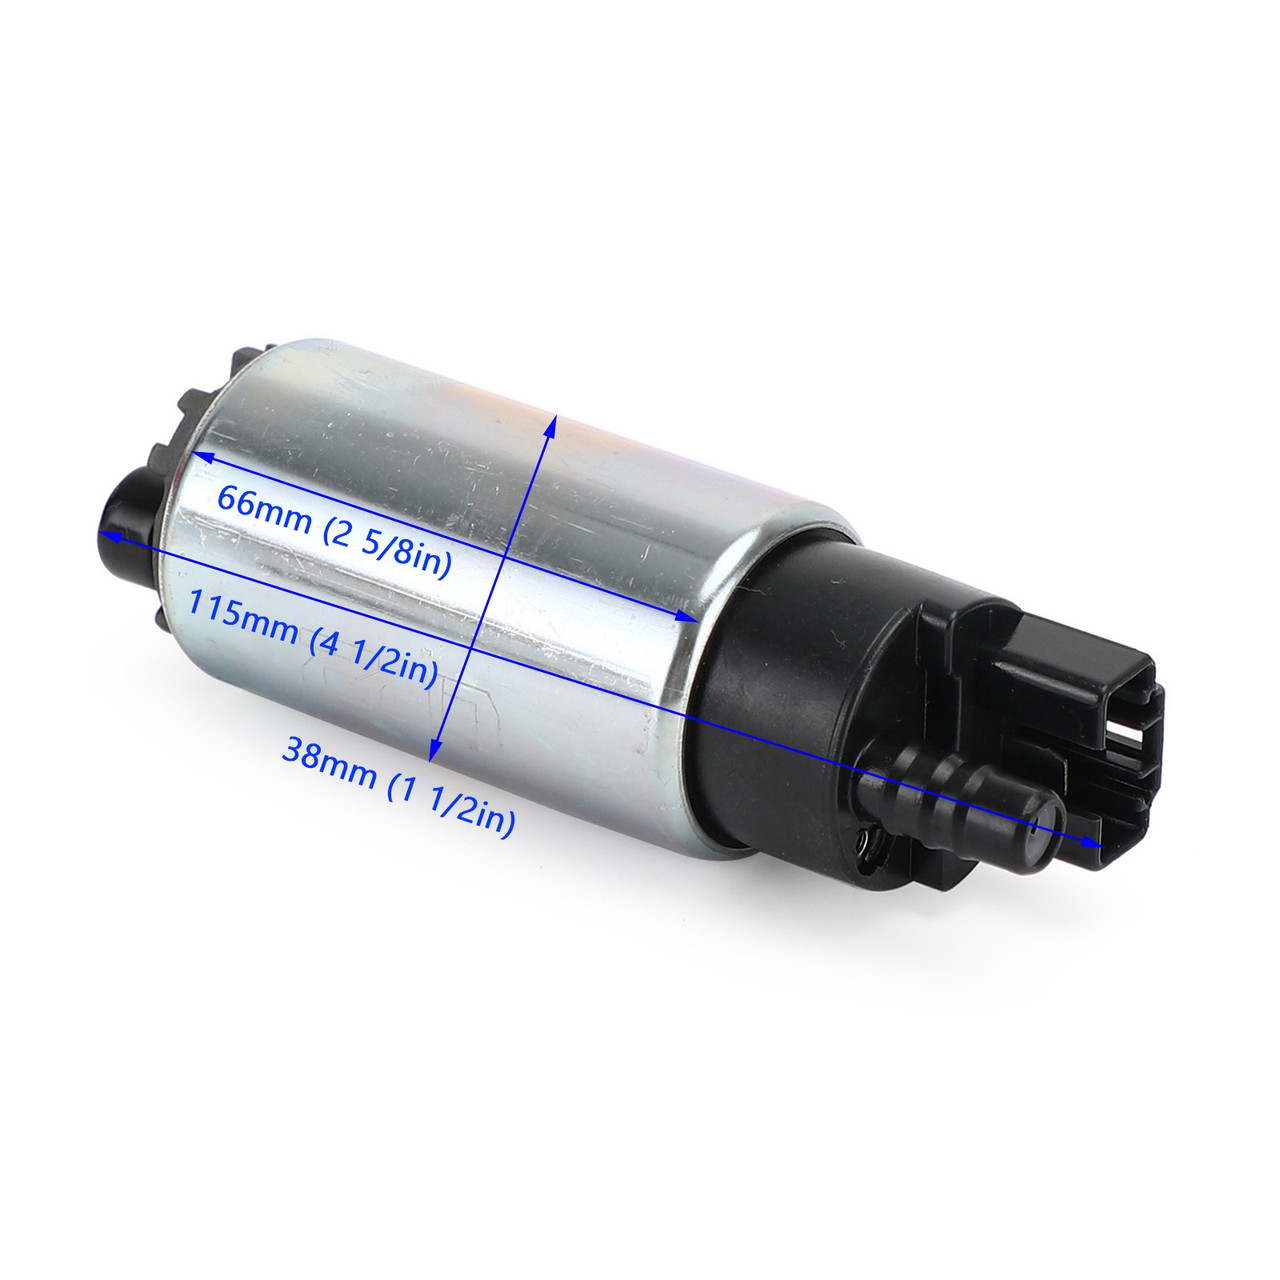 Intank EFI Fuel Pump w/ Filter Fit for BMW F650 GS R13 Dakar R13 99-07 Scrarver K14 00-05 R13 08-15 Sert?o R13 650 10-14